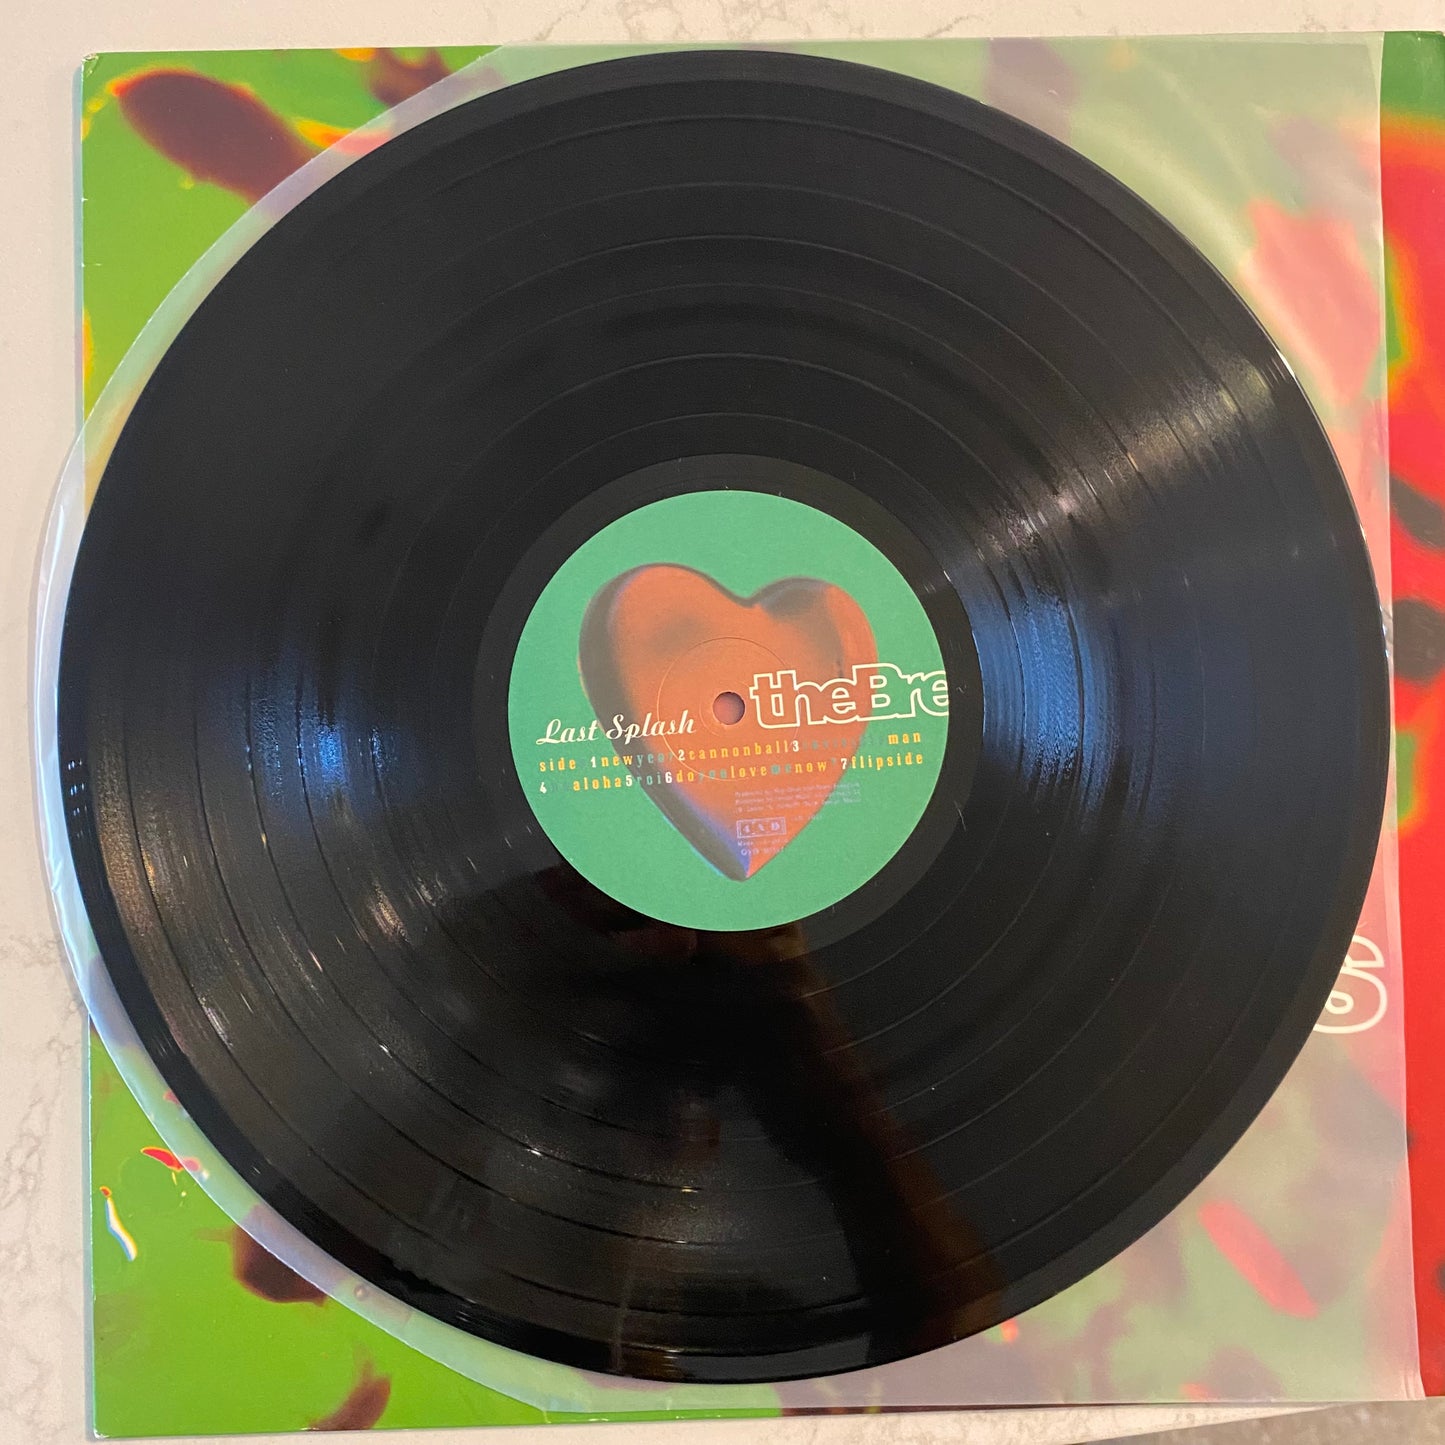 The Breeders - Last Splash (LP, Album) (L)